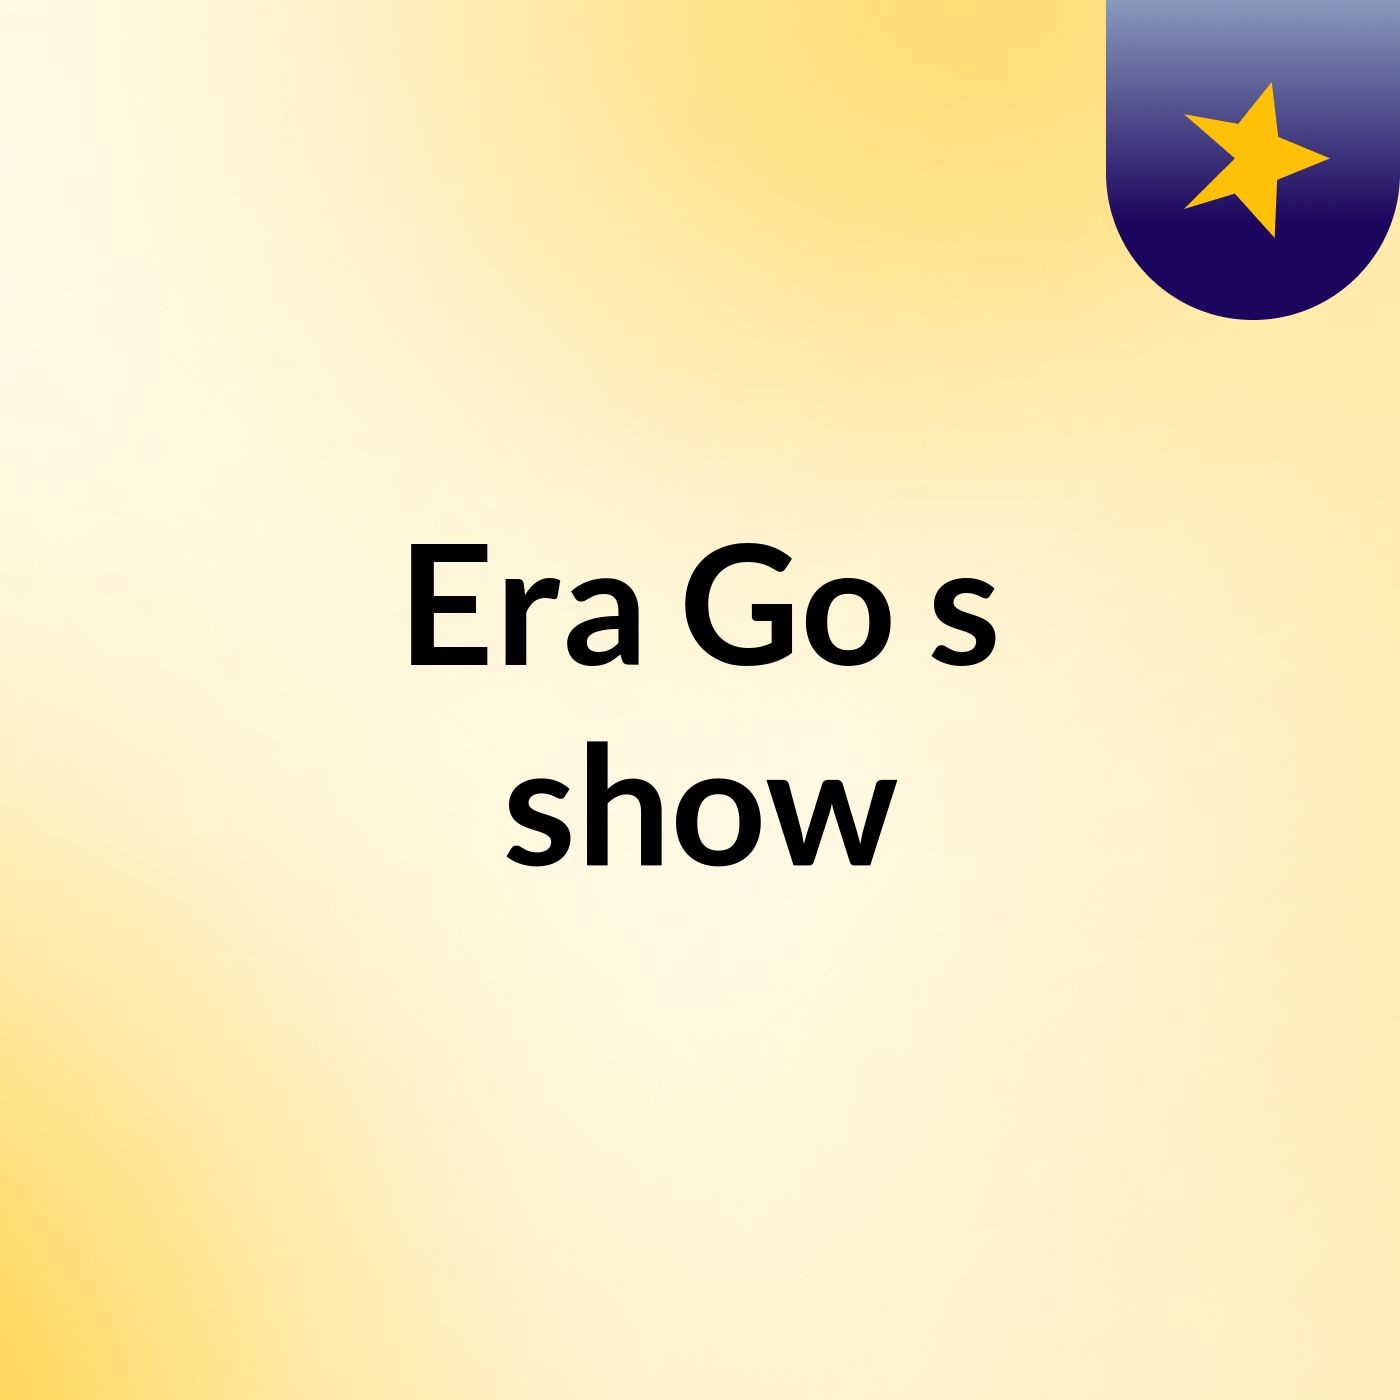 Era Go's show